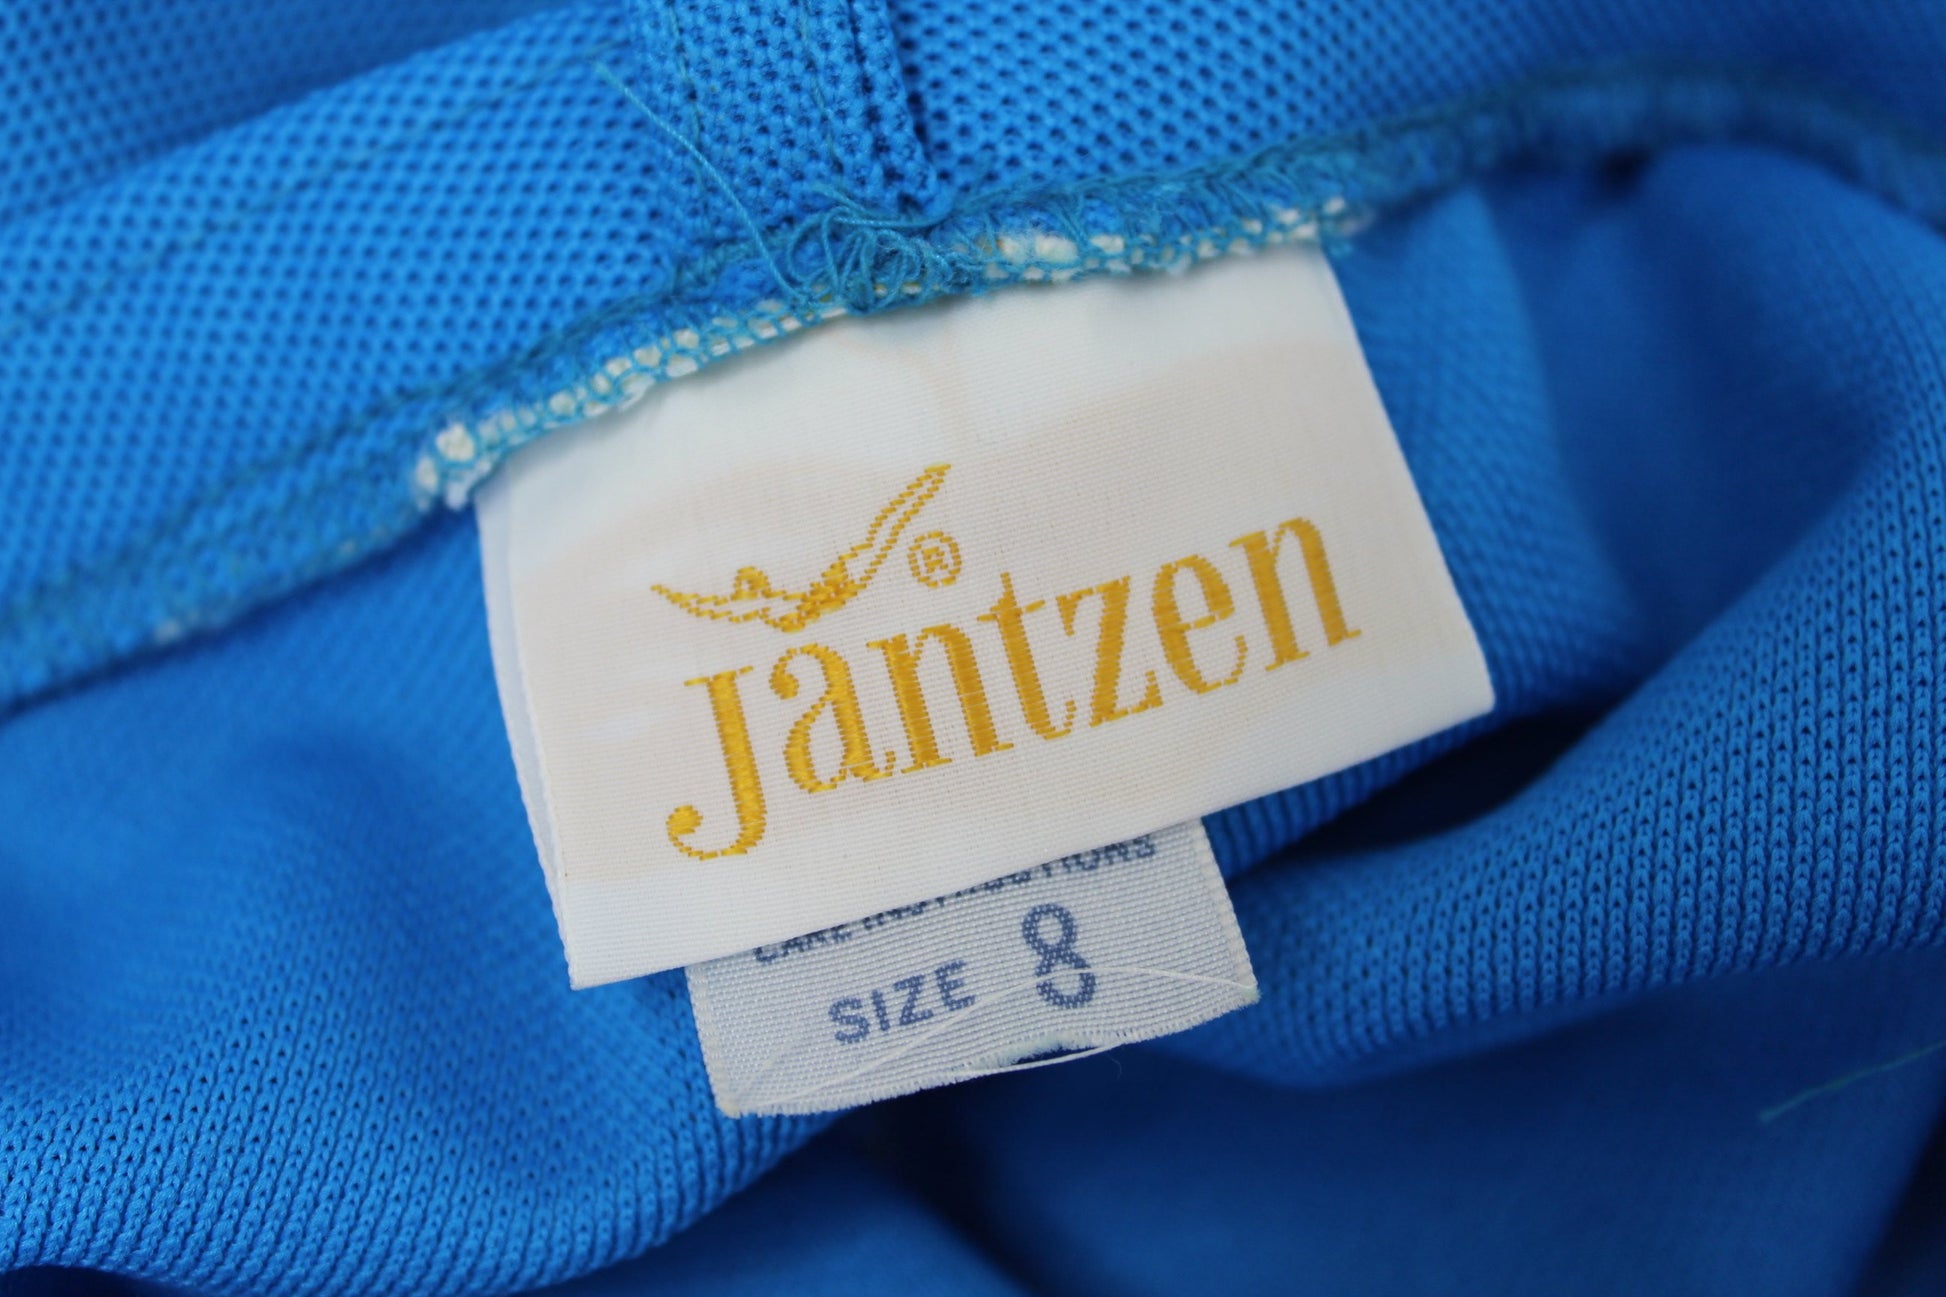 Vintage Jantzen Nautical Pants Suit 1960s - Button Tab Flare Pants - Long Sleeve Jacket excellent condition